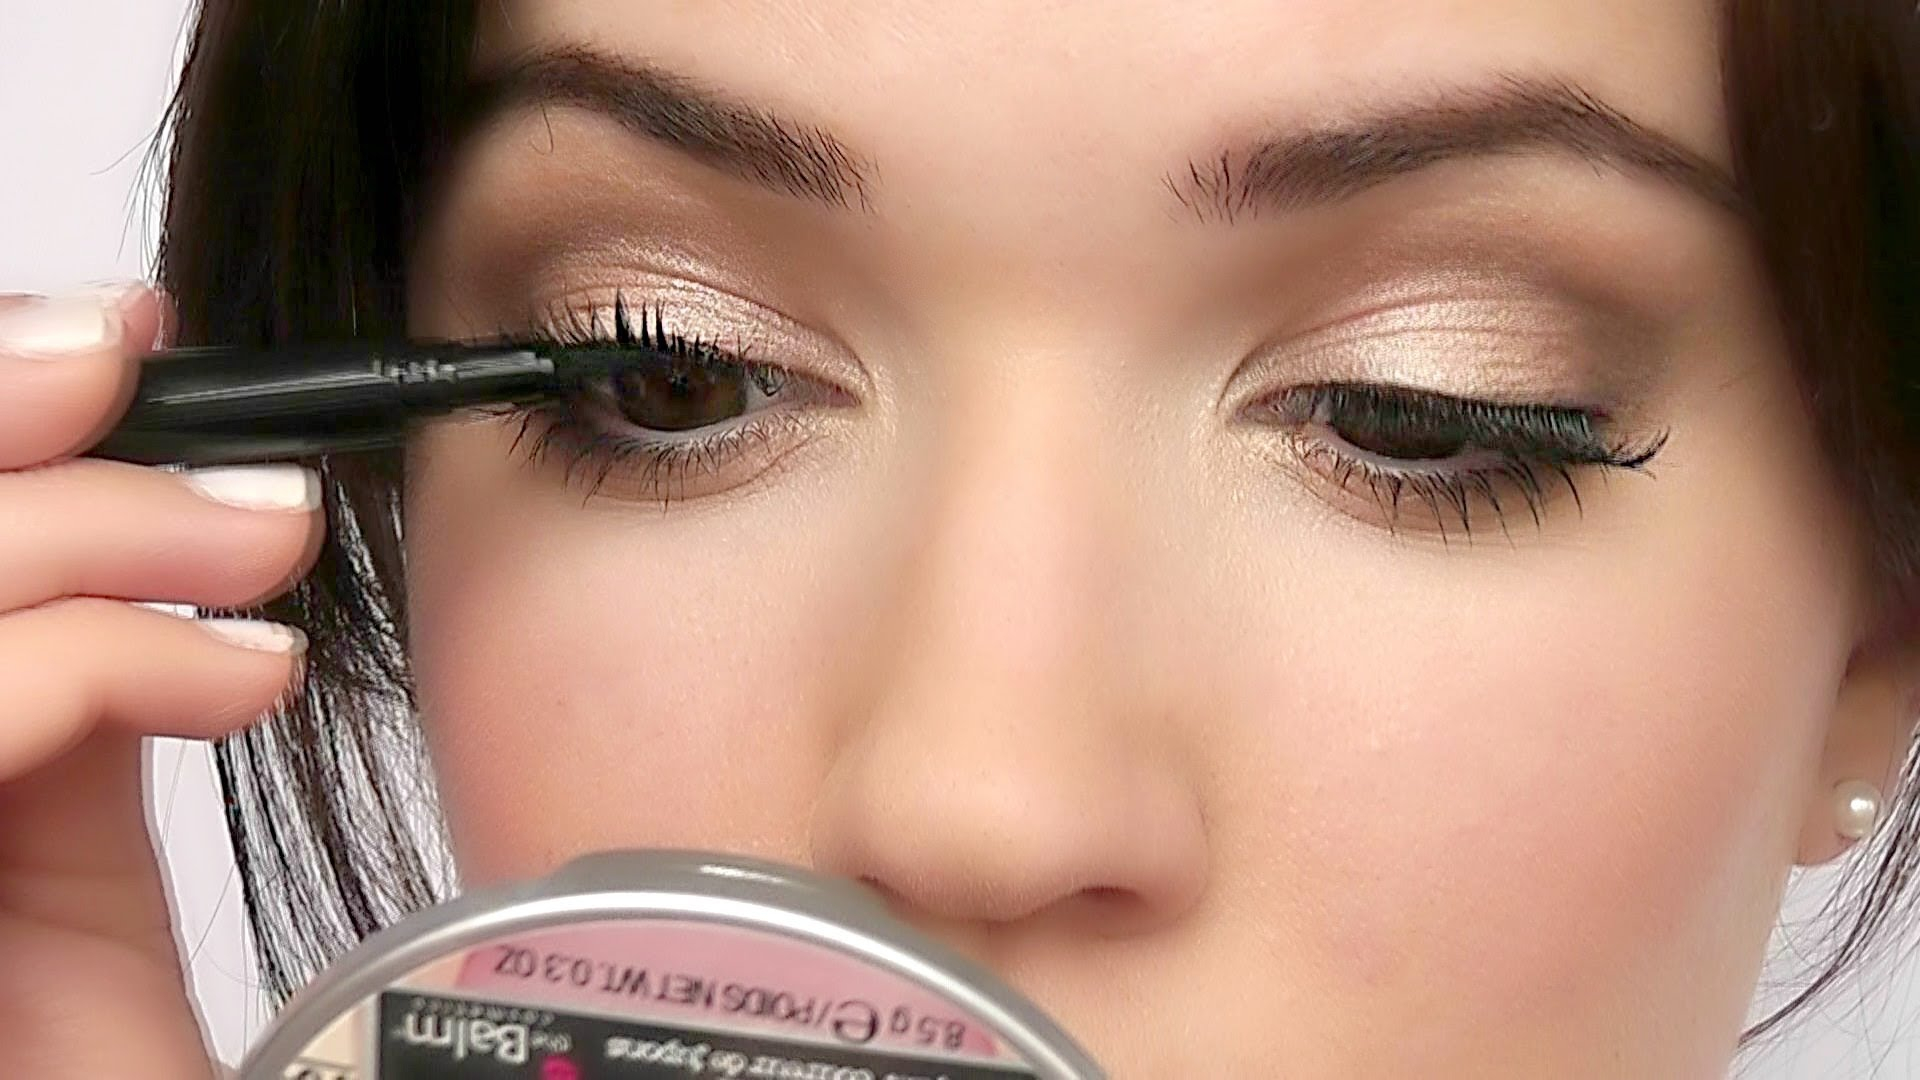 Eye Makeup With Fake Eyelashes How To Apply False Eyelashes Under The Lashline Beauty Blog The